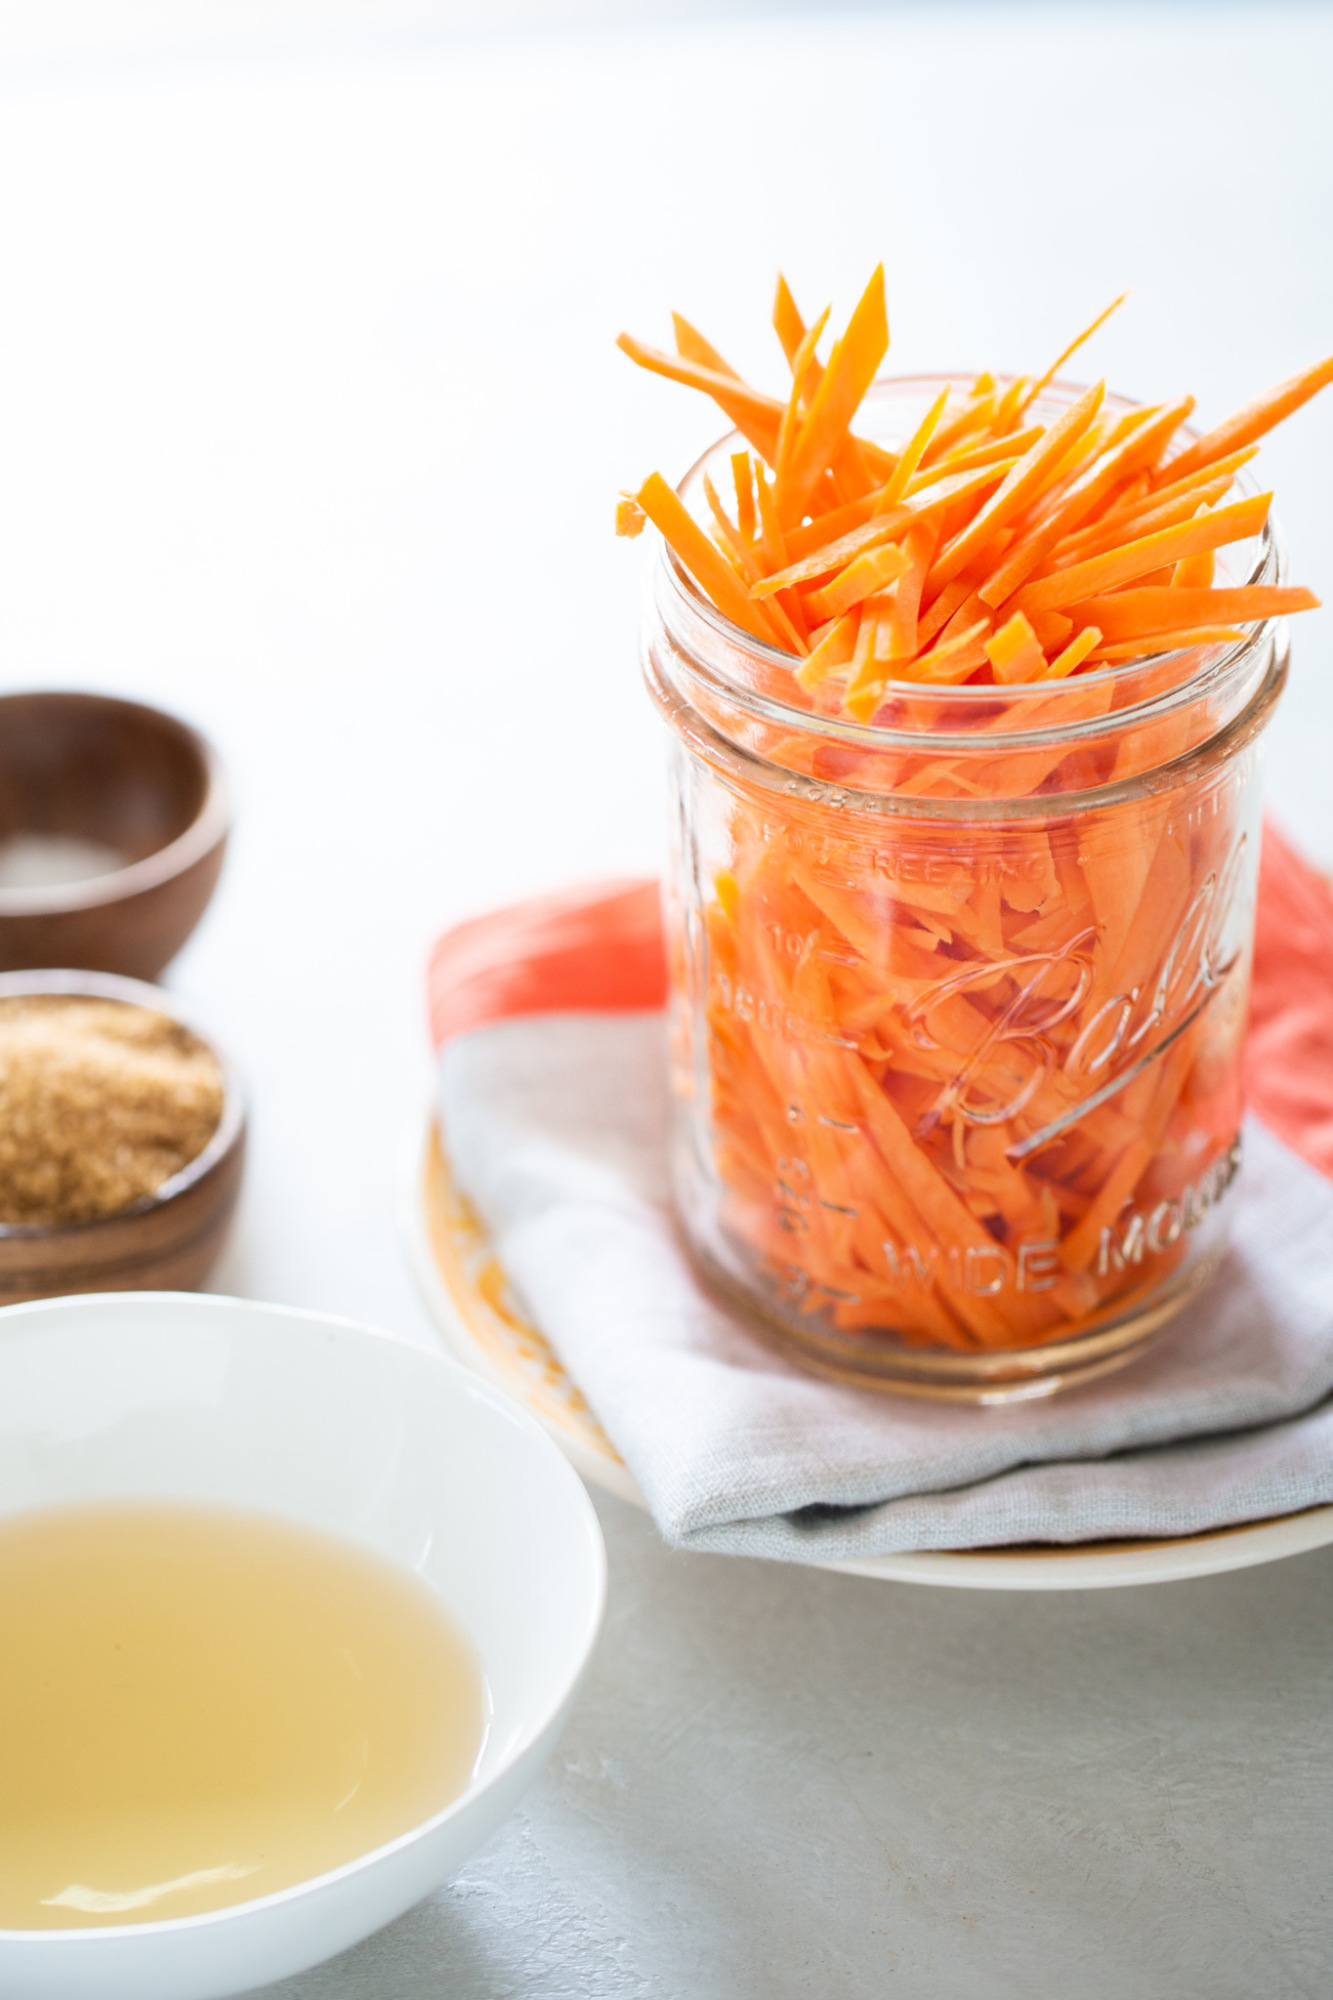 julienned carrots in a jar